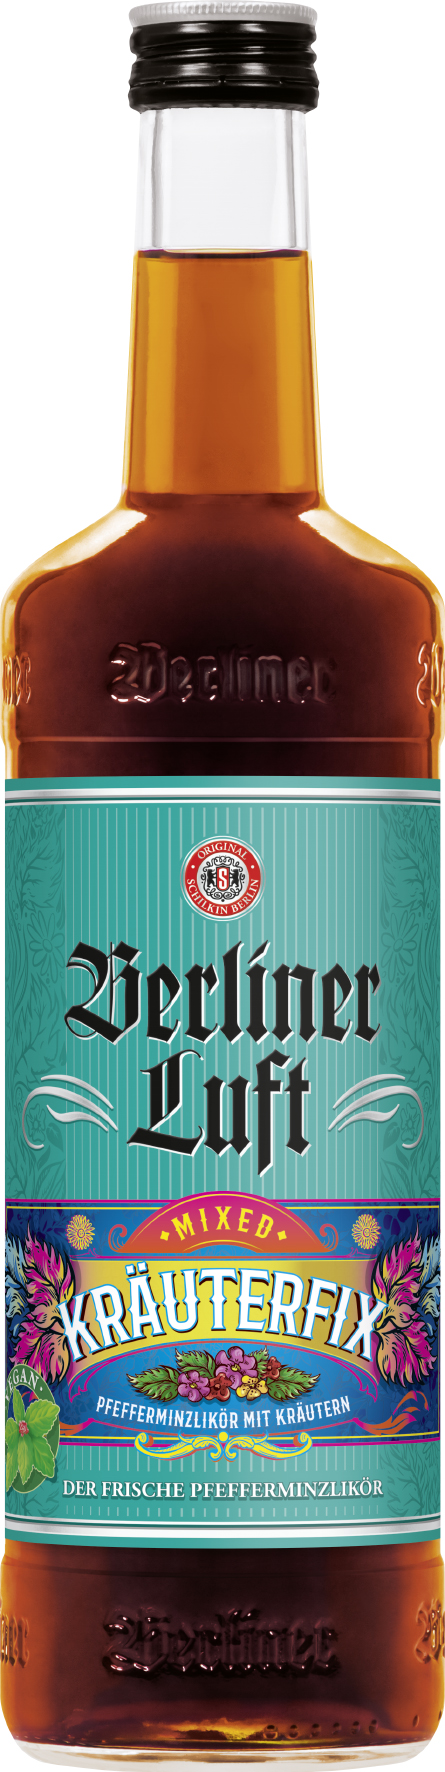 Berliner Luft - Kräuterfix - 0,7l 18%vol.